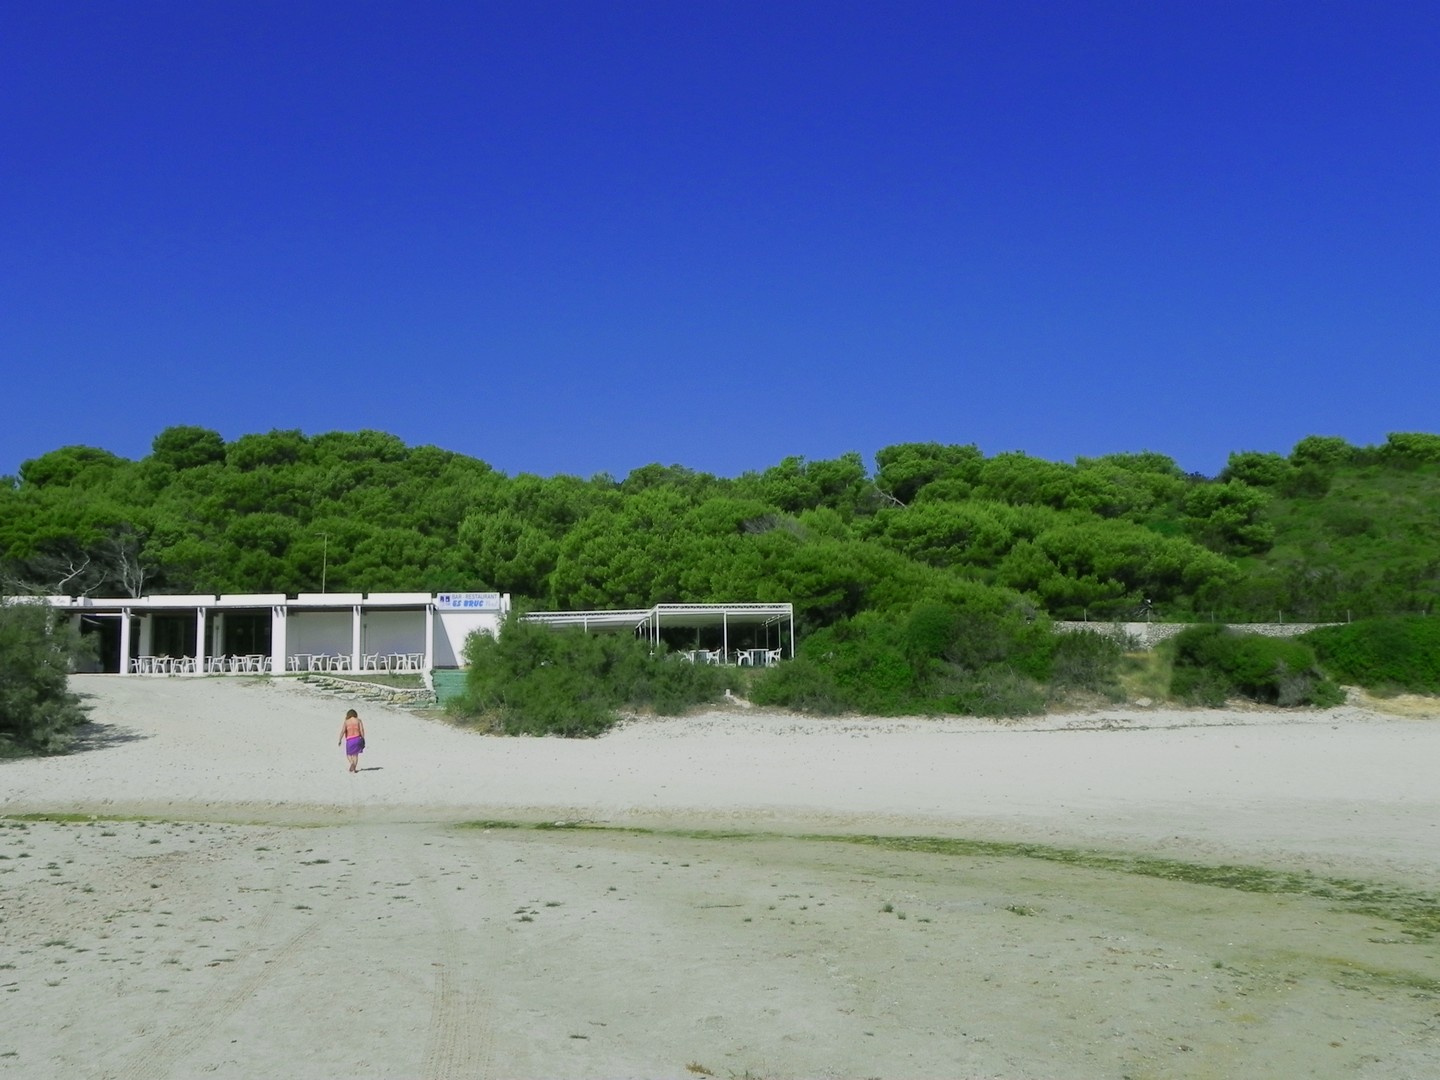 La più famosa tra le spiagge di Minorca si chiama Cala Turqueta